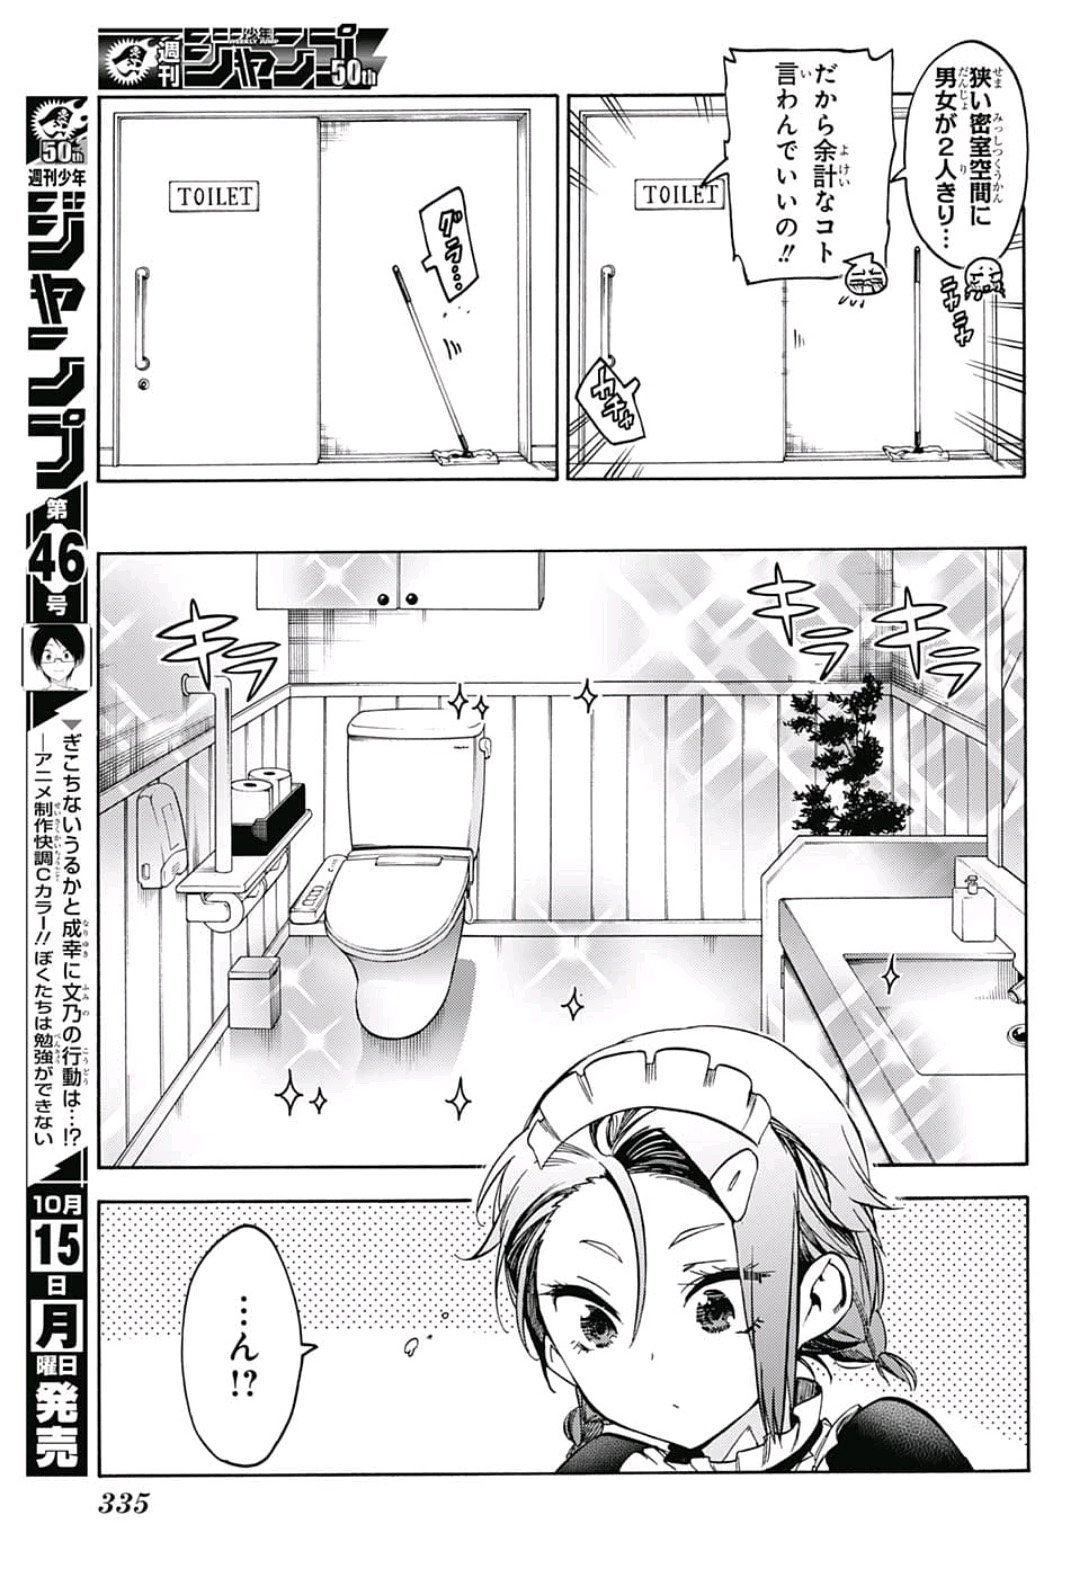 Bokutachi wa Benkyou ga Dekinai - Chapter 82 - Page 3